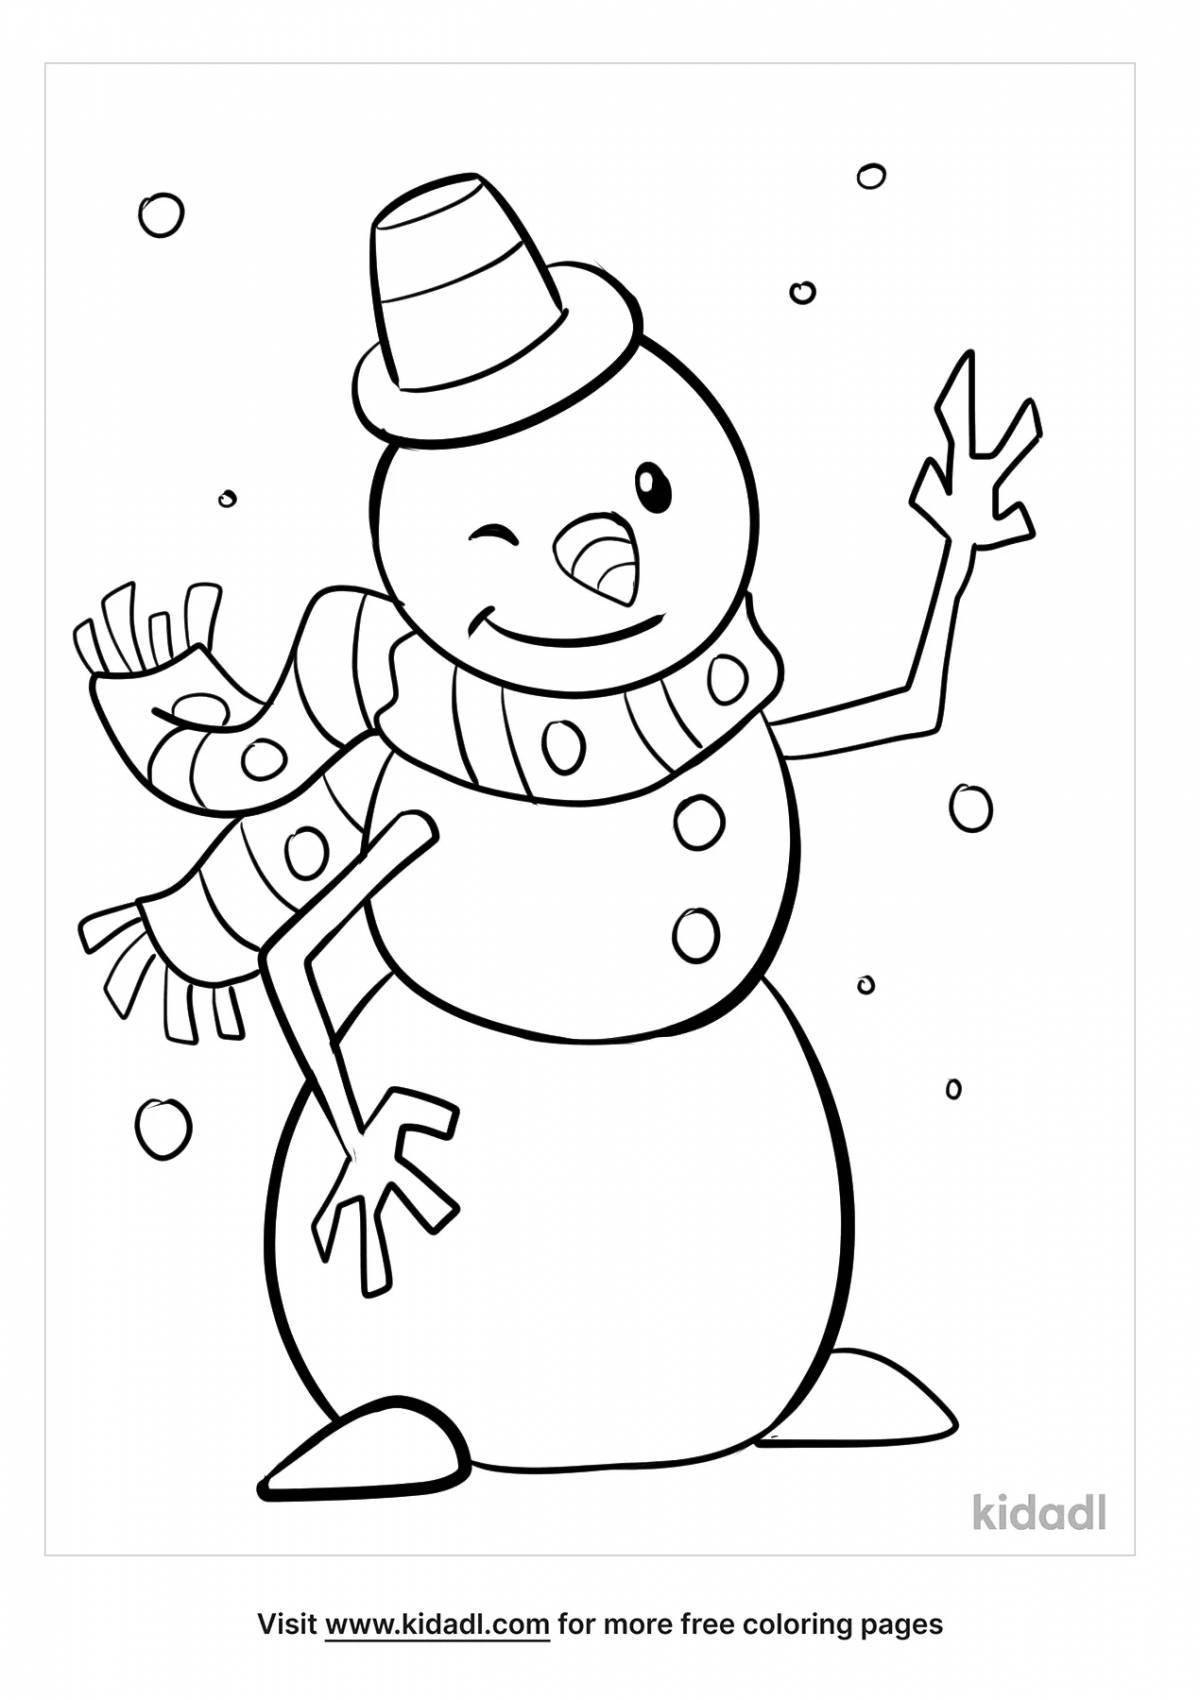 Праздничная раскраска снеговик для детей 5 лет